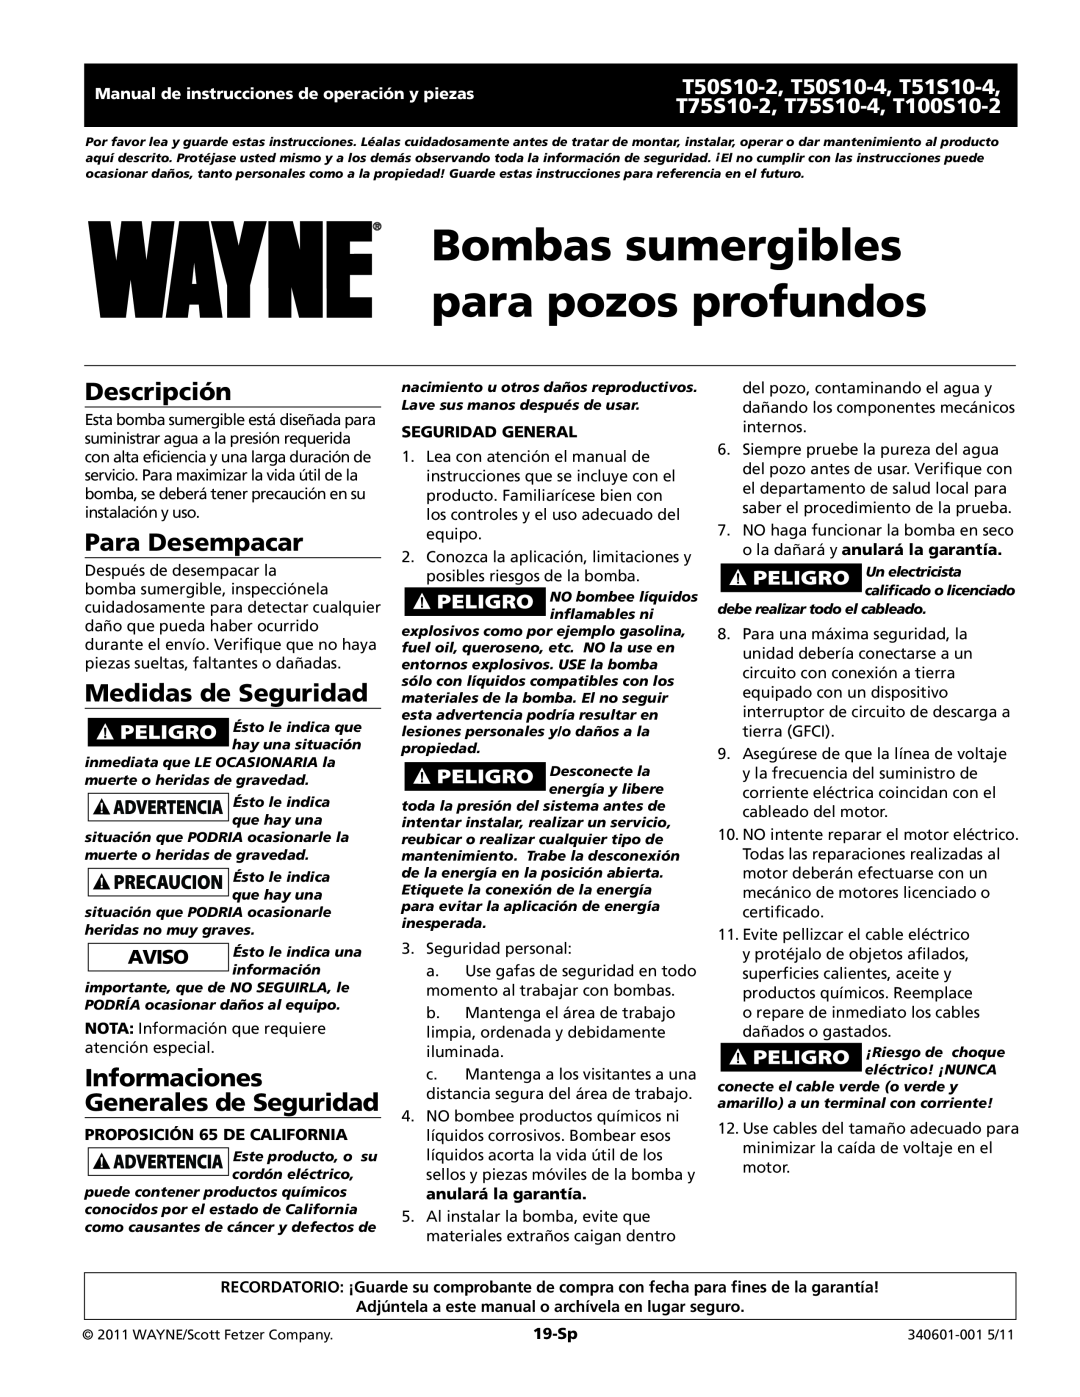 Wayne T50S10-4 warranty Bombas sumergibles para pozos profundos, Descripción, Para Desempacar, Medidas de Seguridad, 19-Sp 